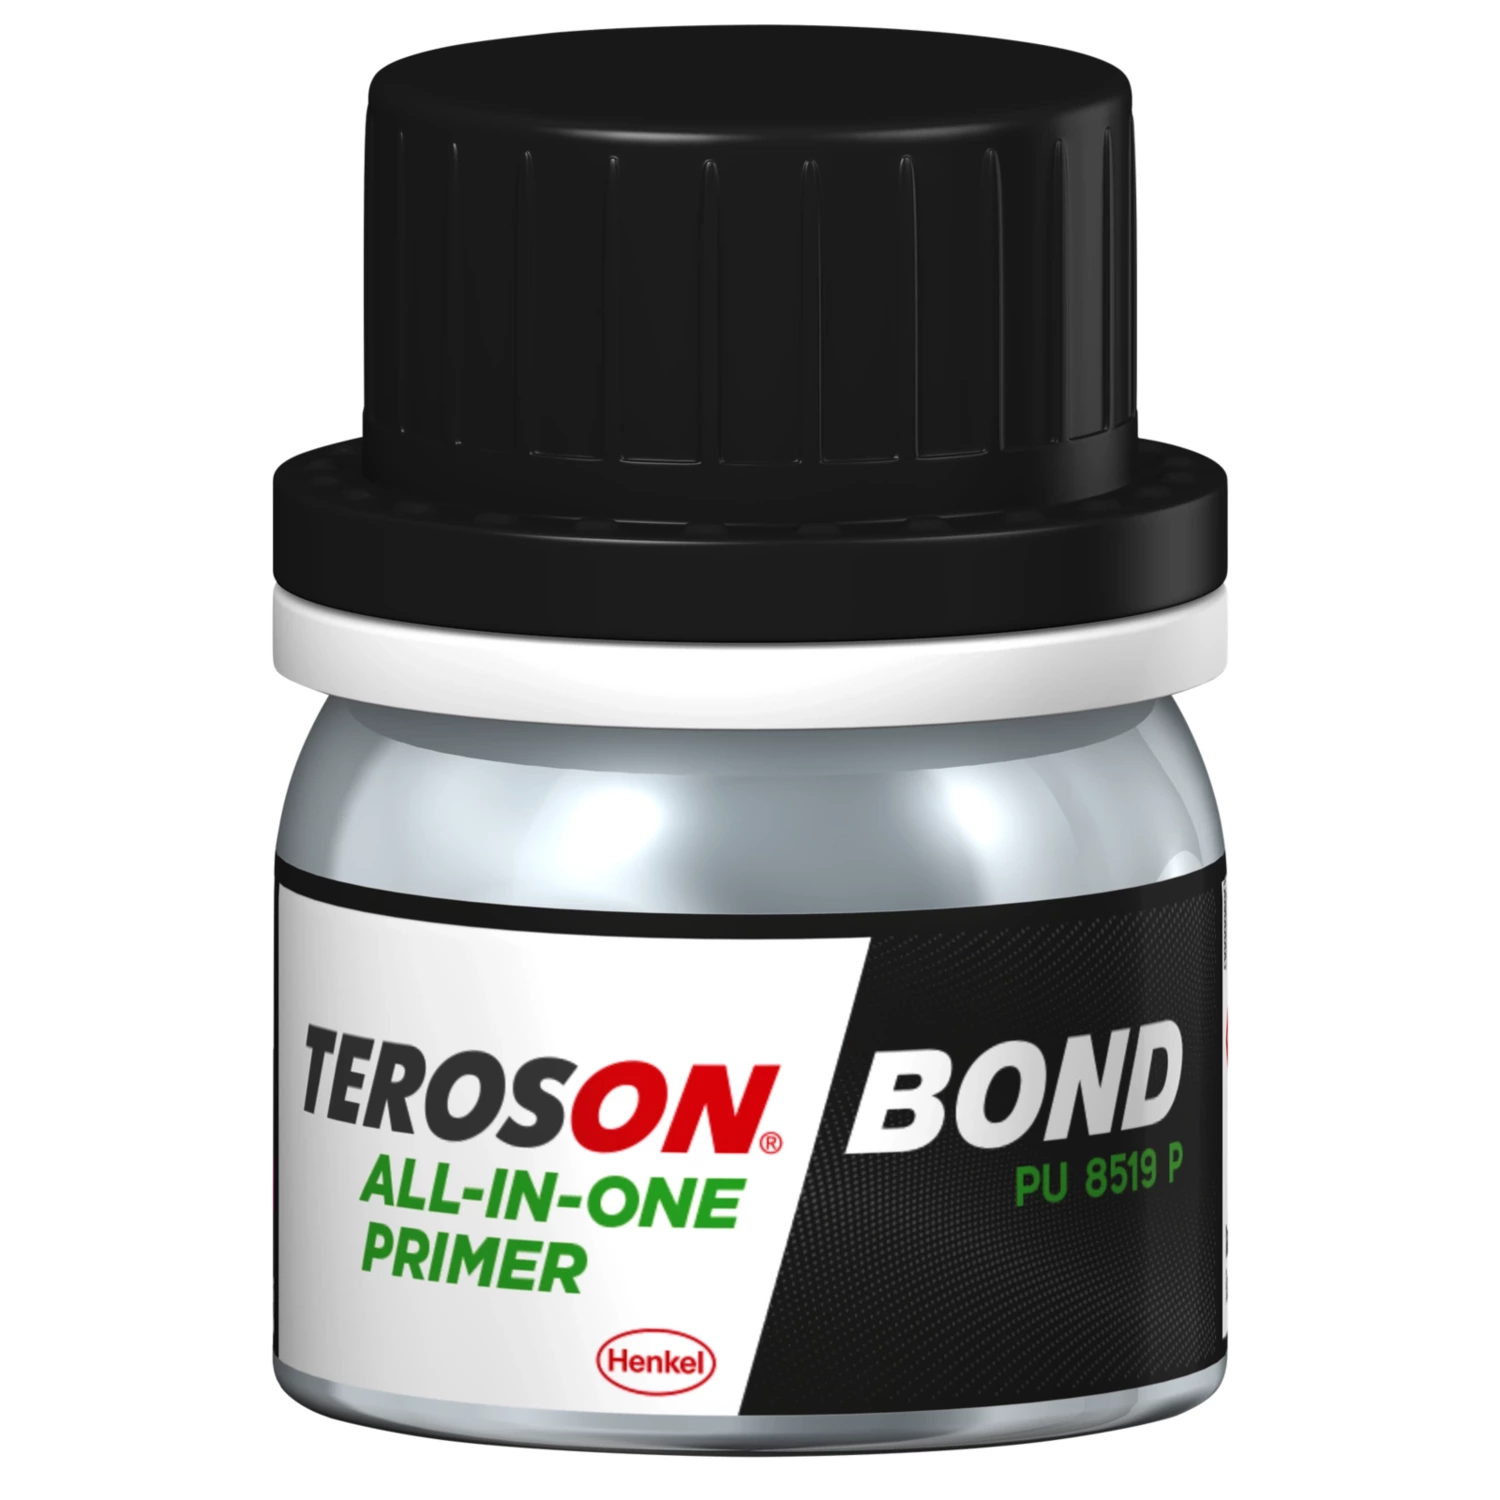 Teroson BOND All-in-one primer - základní nátěr a aktivátor s UV ochranou 10ml